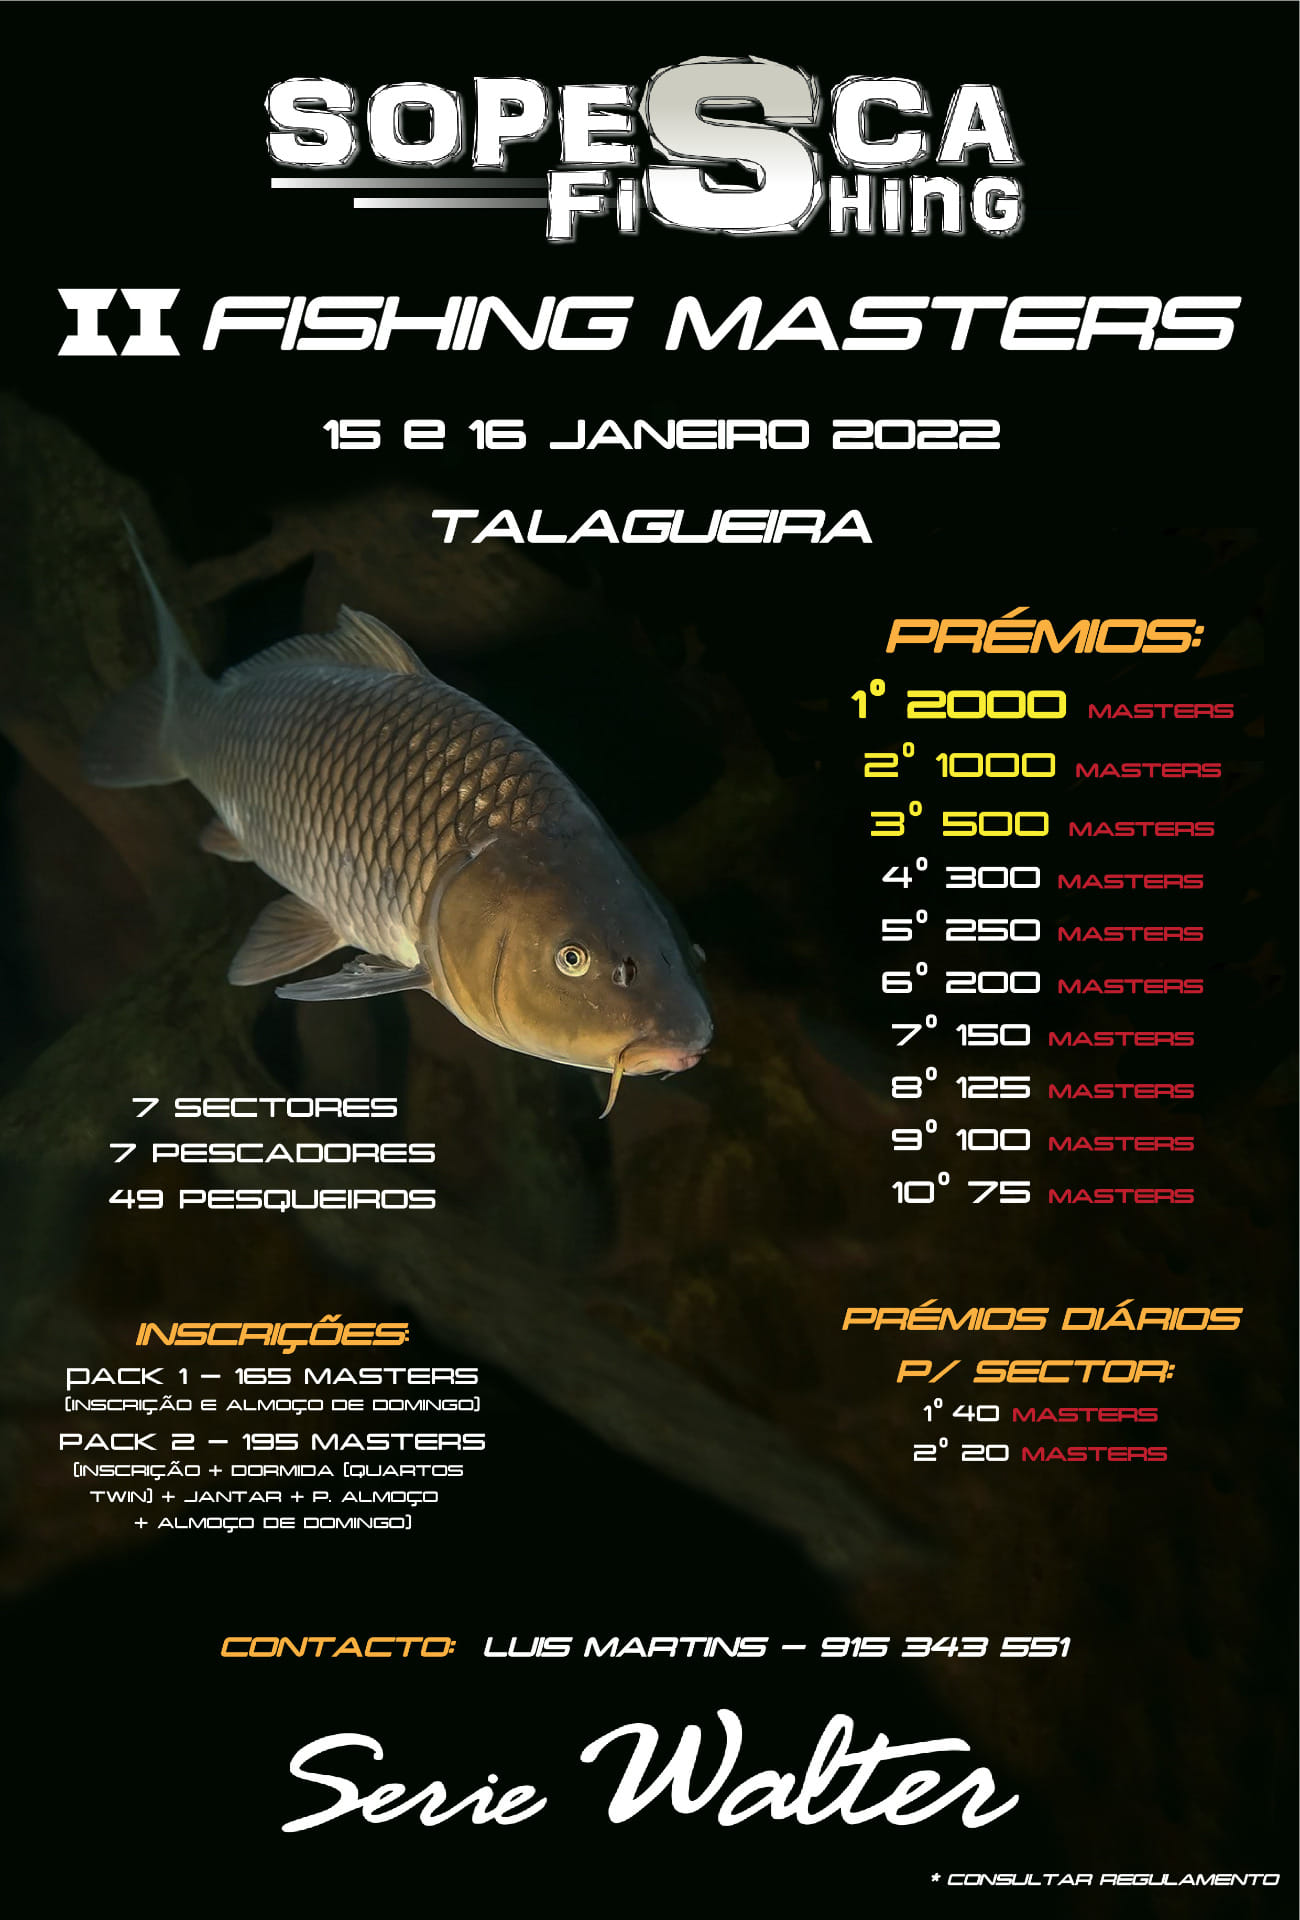  II Fishing Masters (1/2)